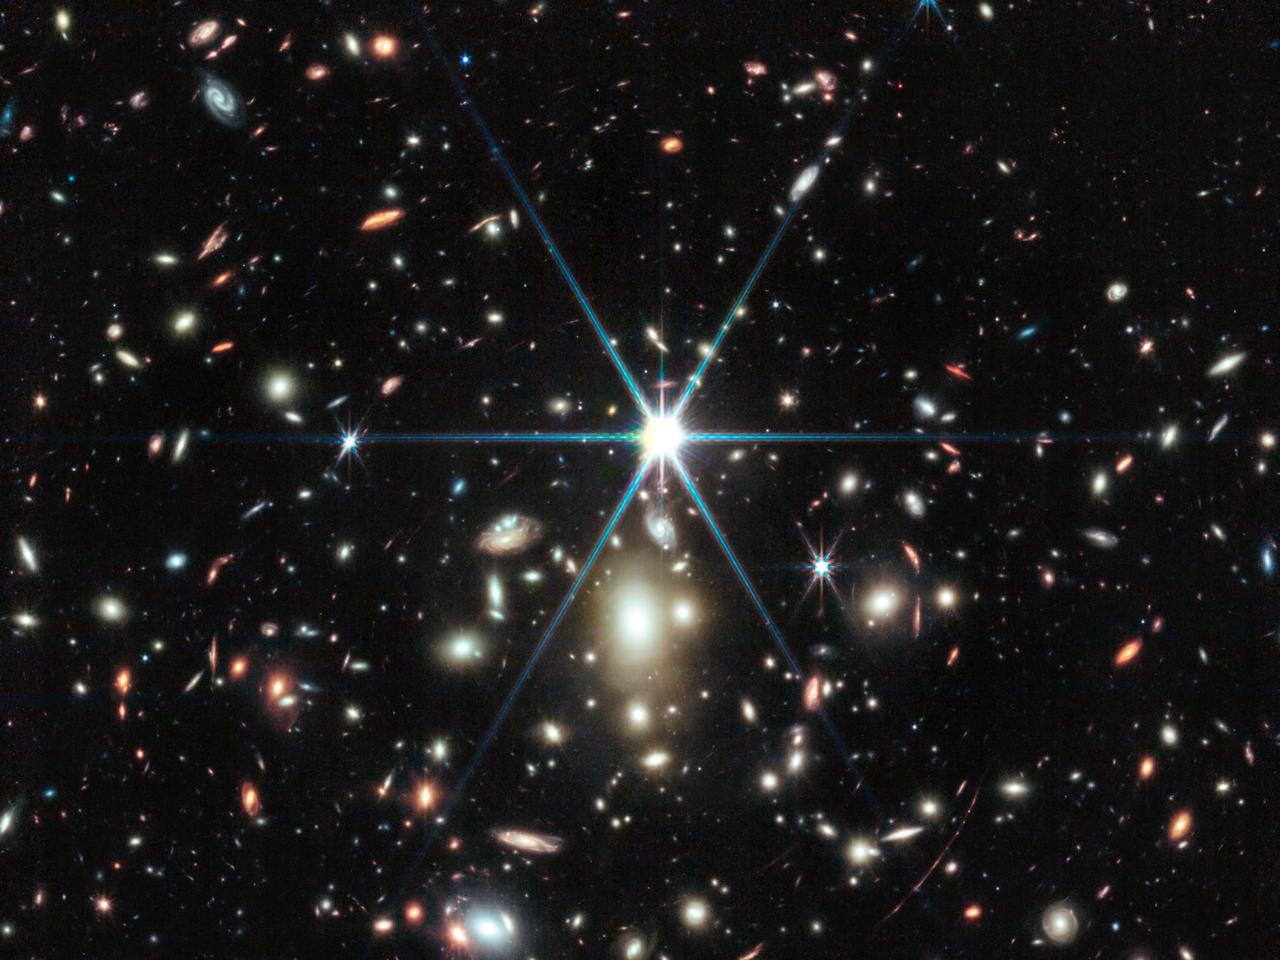 NASAのジェームズウェッブ宇宙望遠鏡によるこの写真には、サンライズ・アーク（日の出の弧）と、その銀河内にある、これまでに観測された最も遠い星が写っています。